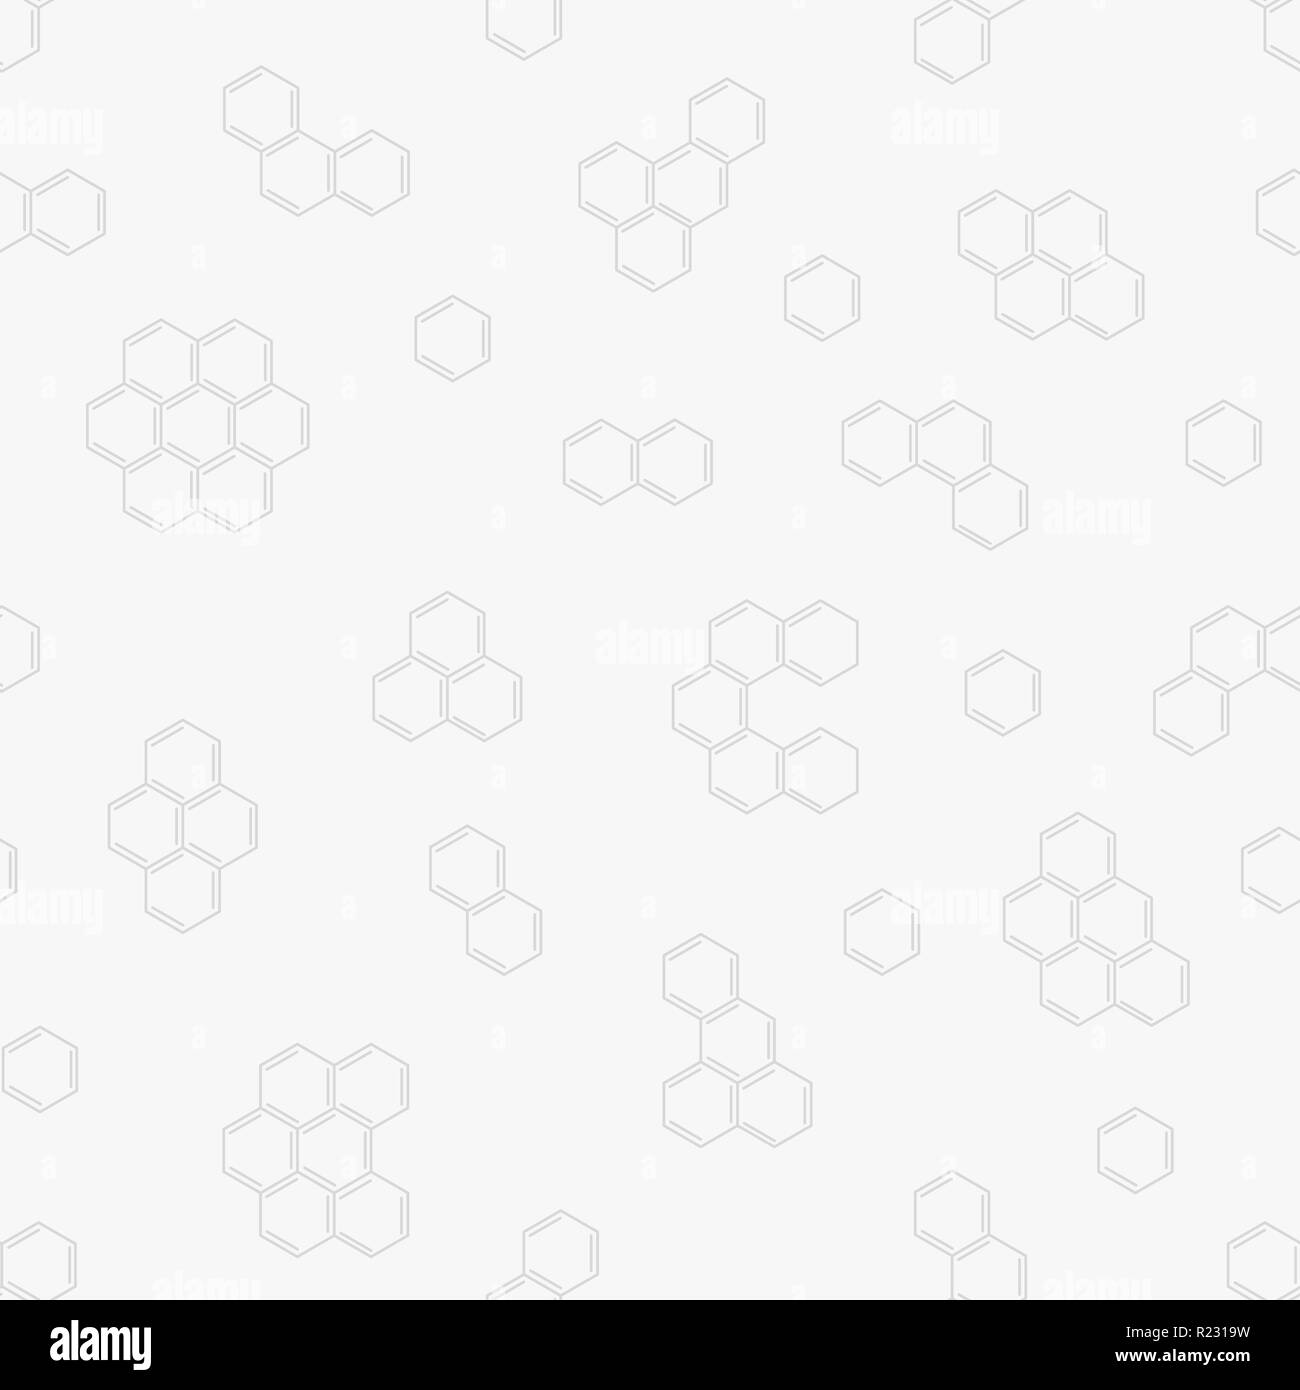 Vektor Kamm nahtlose Muster. Geometrische chemische hexagonalen Muster auf grauem Hintergrund Stock Vektor